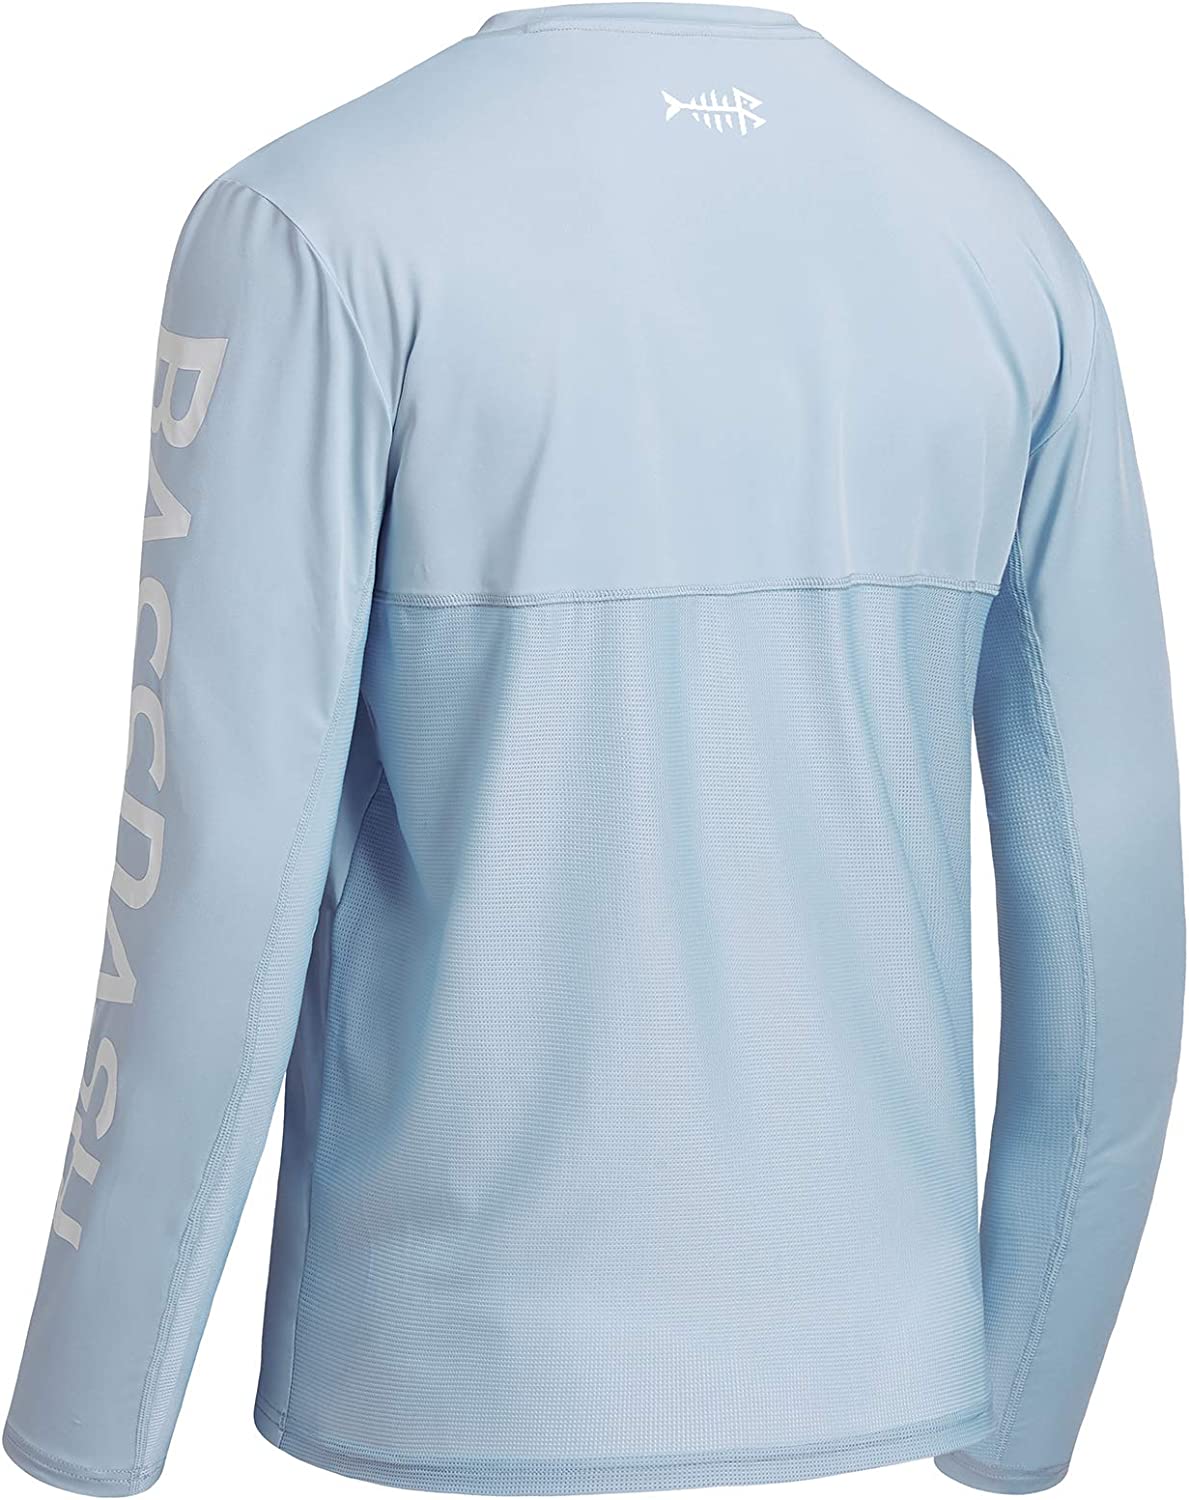 BASSDASH Fishing T Shirts for Men UV Sun Protection UPF 50+ Long